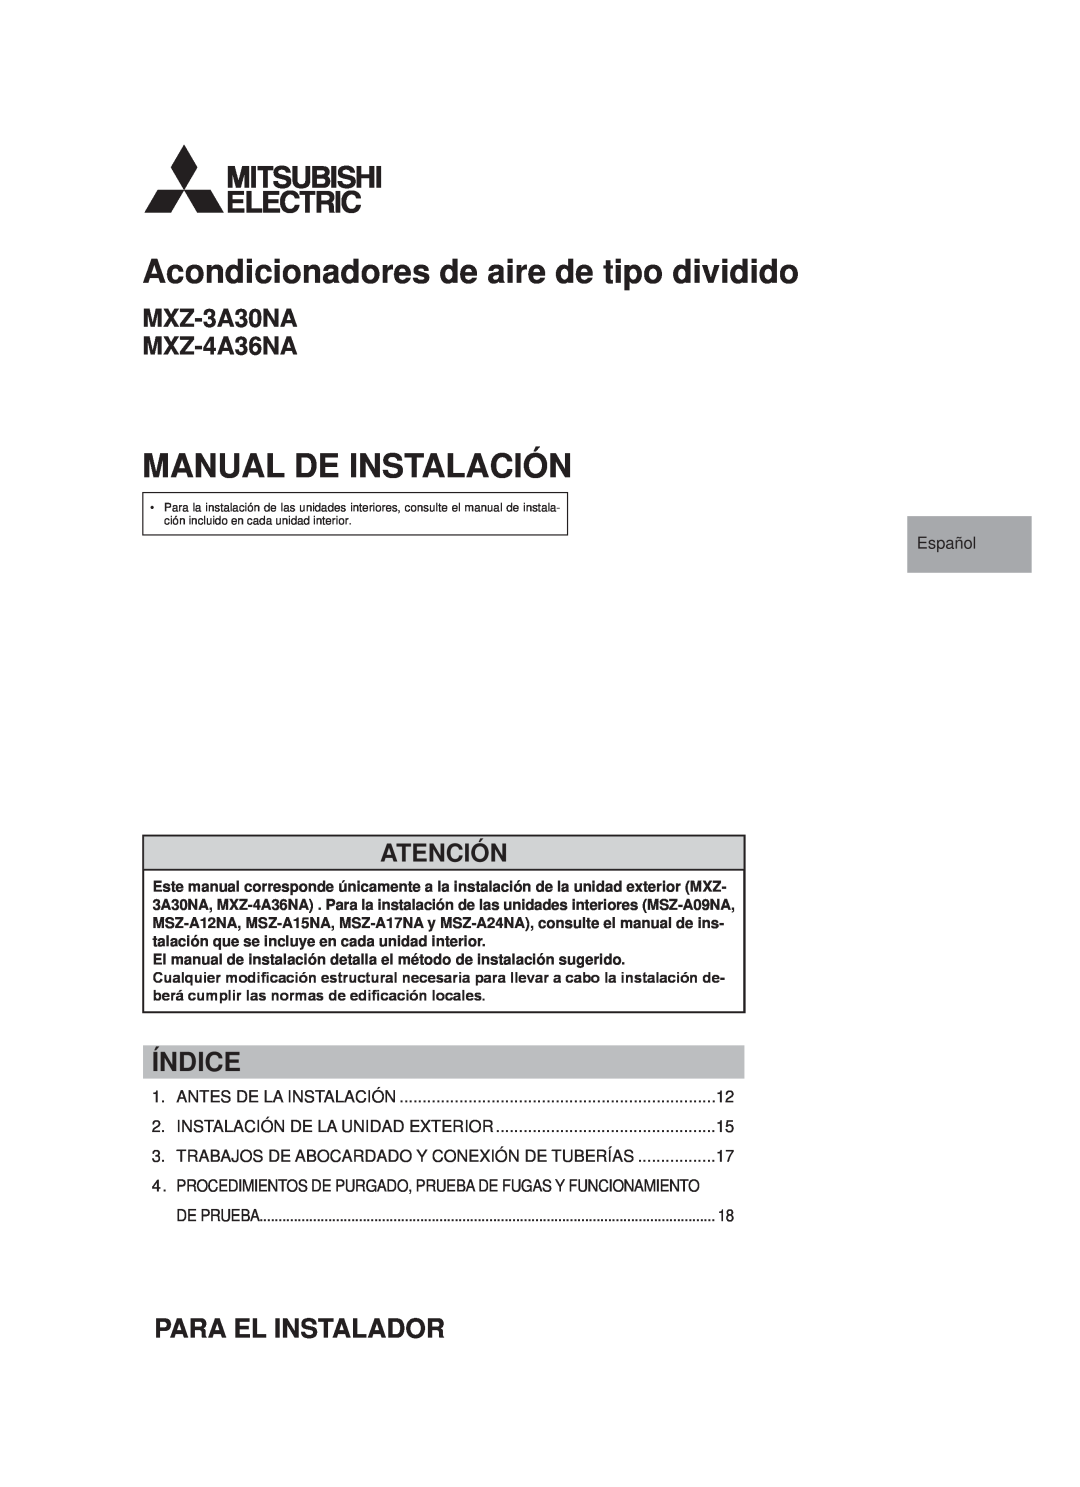 Troy-Bilt MXZ-4A36NA Acondicionadores de aire de tipo dividido, Manual De Instalación, Índice, Para El Instalador, Español 